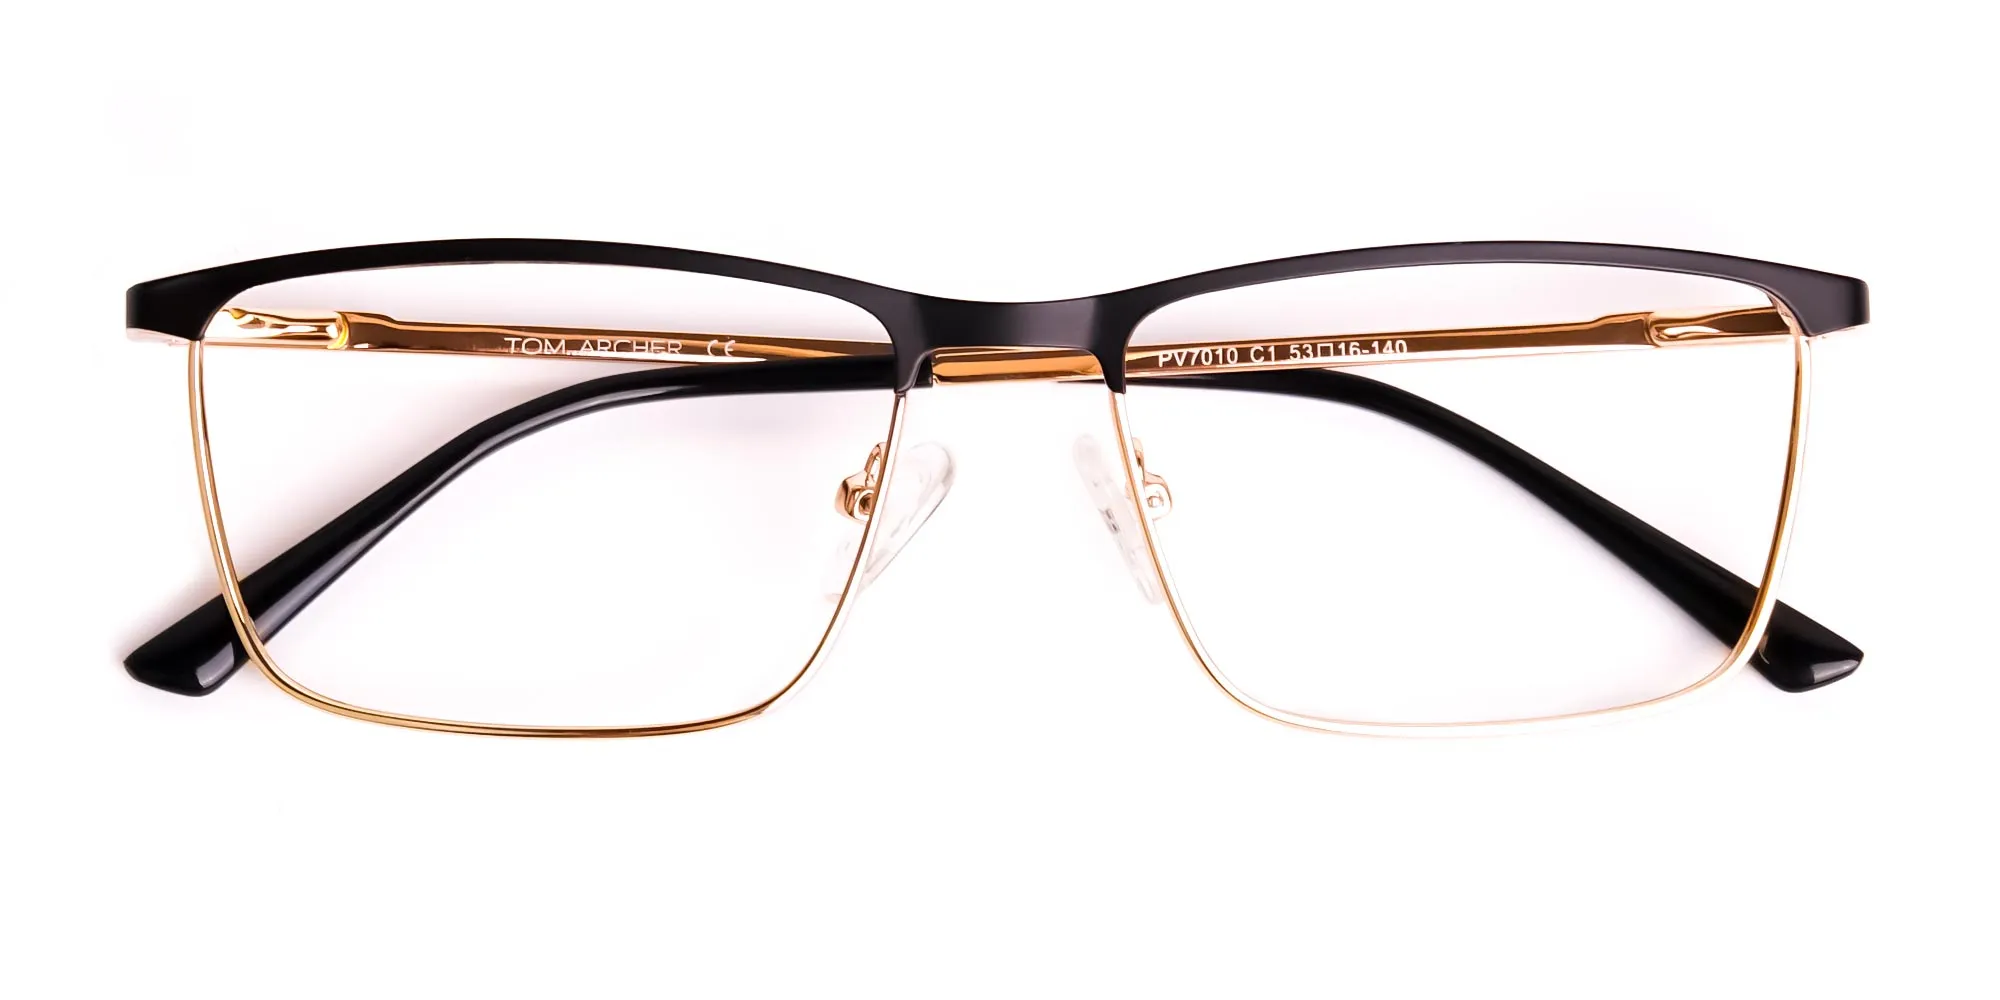 black and gold metal rectangular full rim glasses frames-2